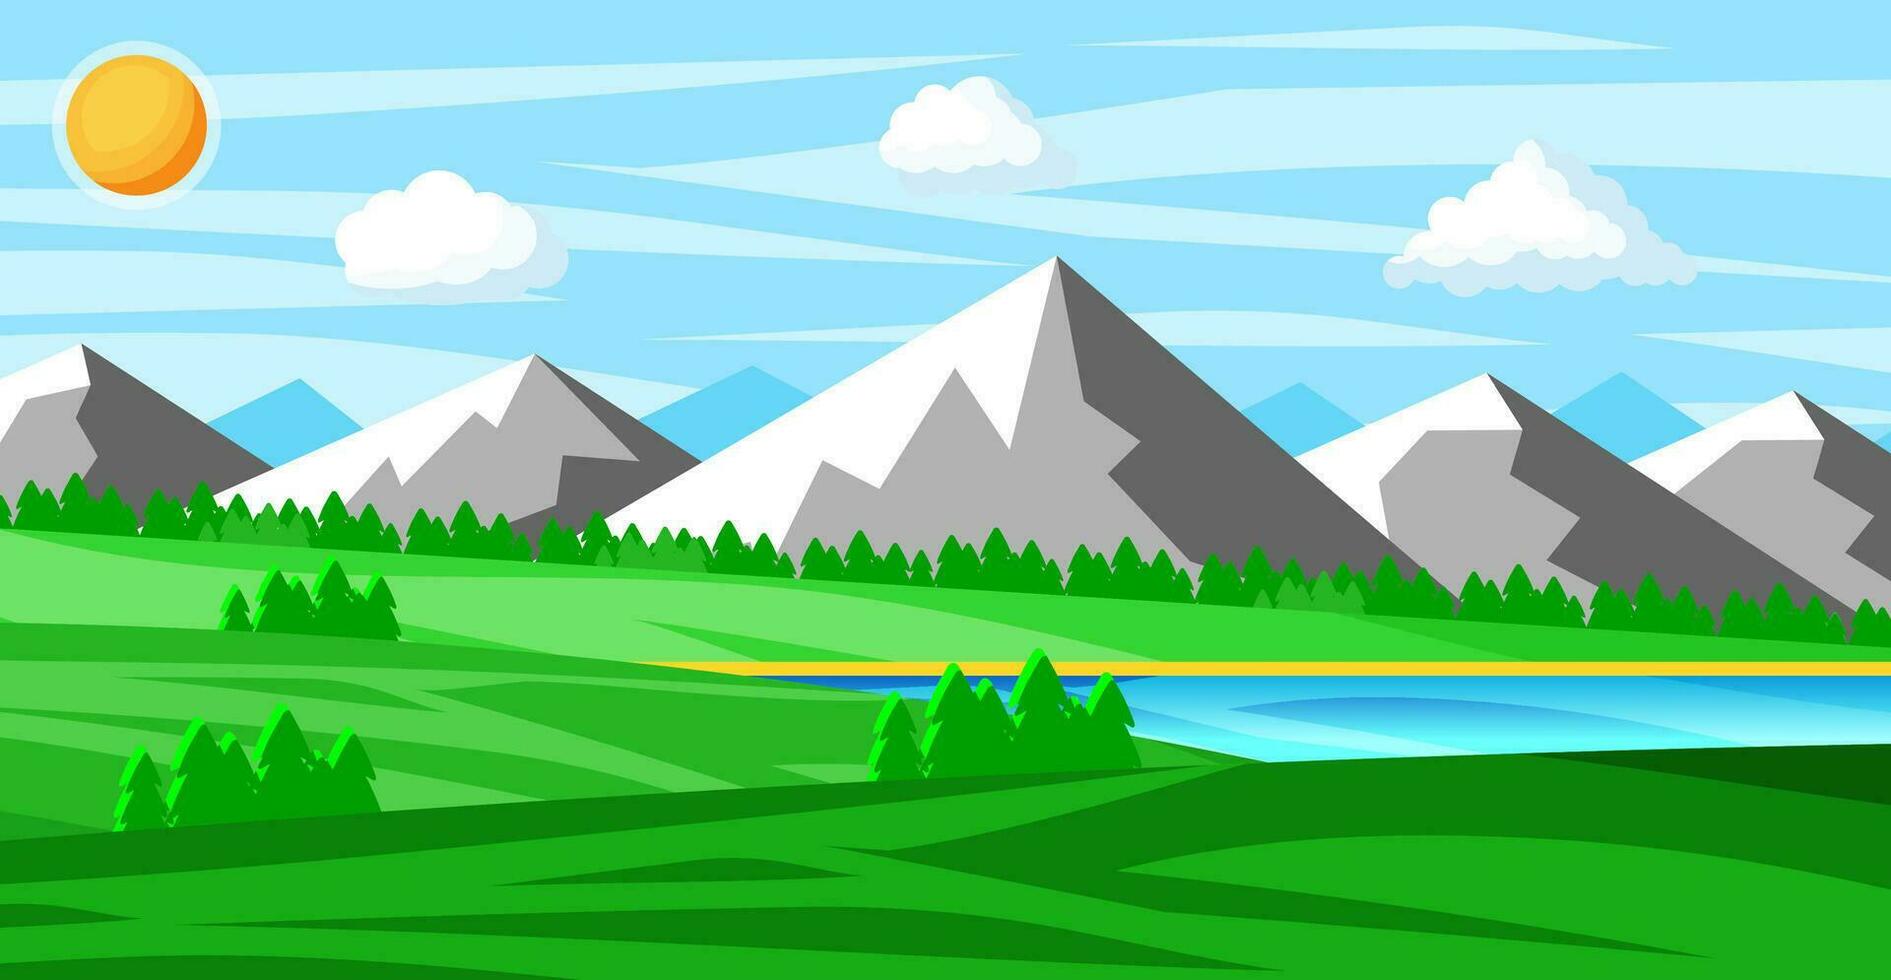 paisaje de montañas y verde sierras. verano naturaleza paisaje con rocas, bosque, césped, sol, cielo, lago y nubes nacional parque o naturaleza reservar. vector ilustración en plano estilo